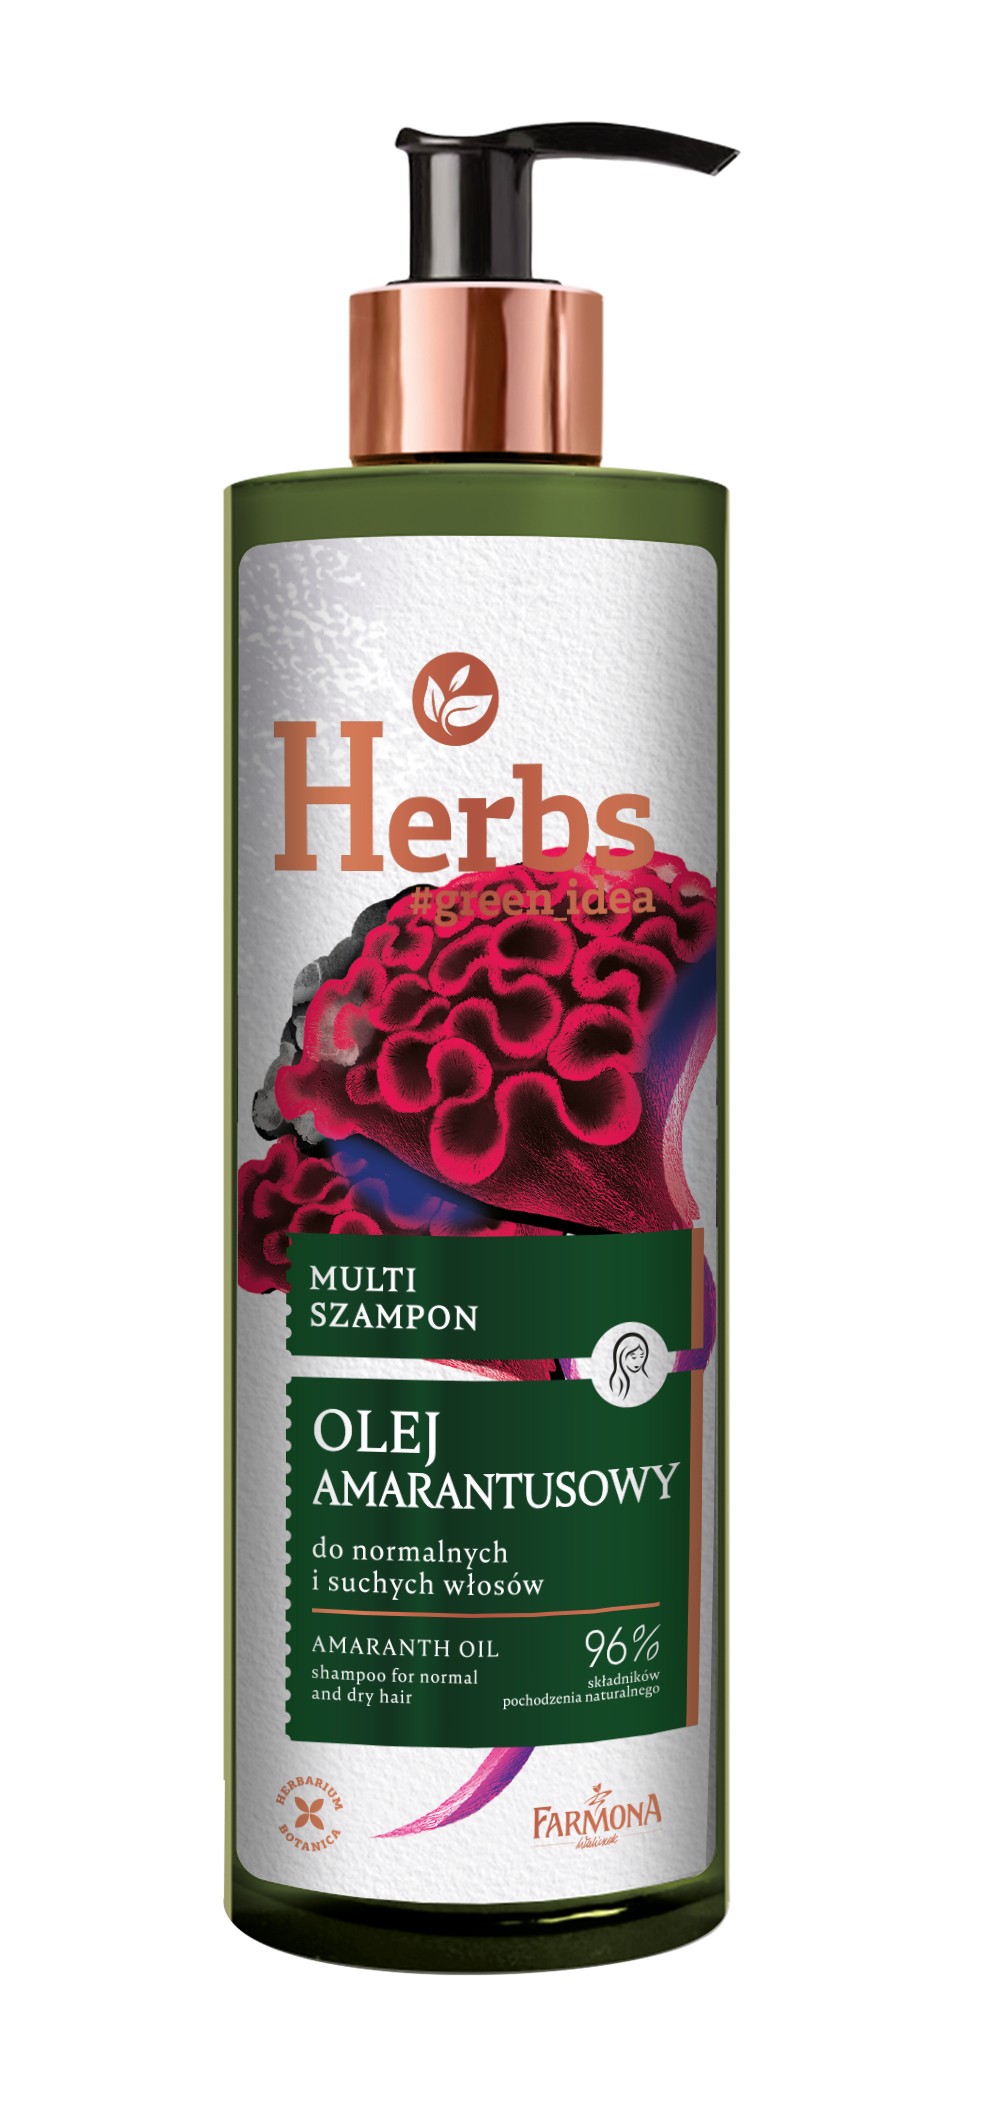 farmona herbal szampon do włosów olej amarantusowy wizaz